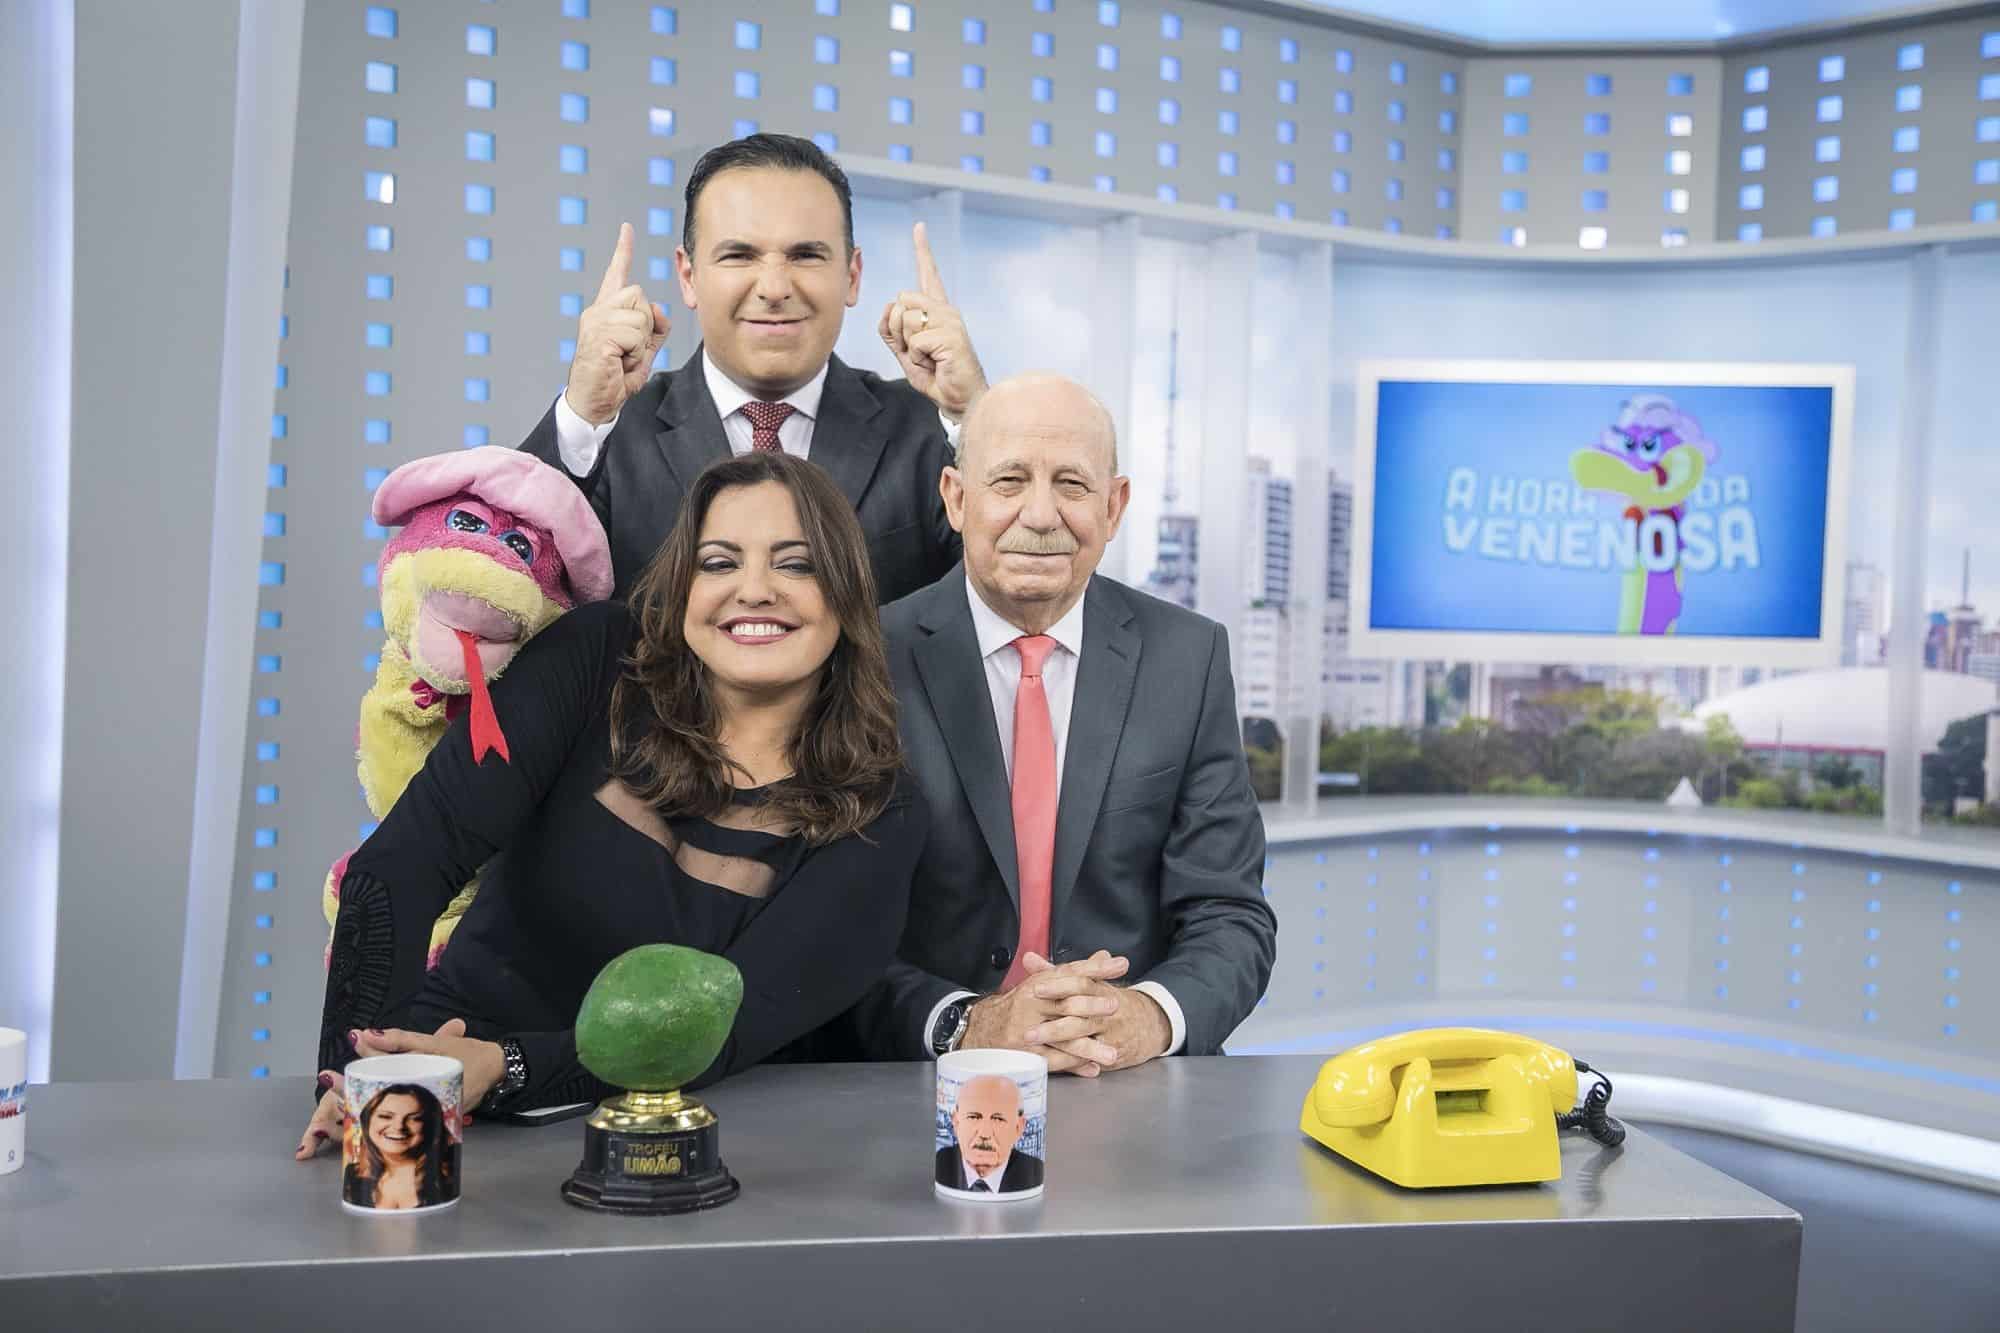 Audiência da TV: “Balanço Geral SP” ultrapassa 5 mil minutos em 1º lugar em 2018